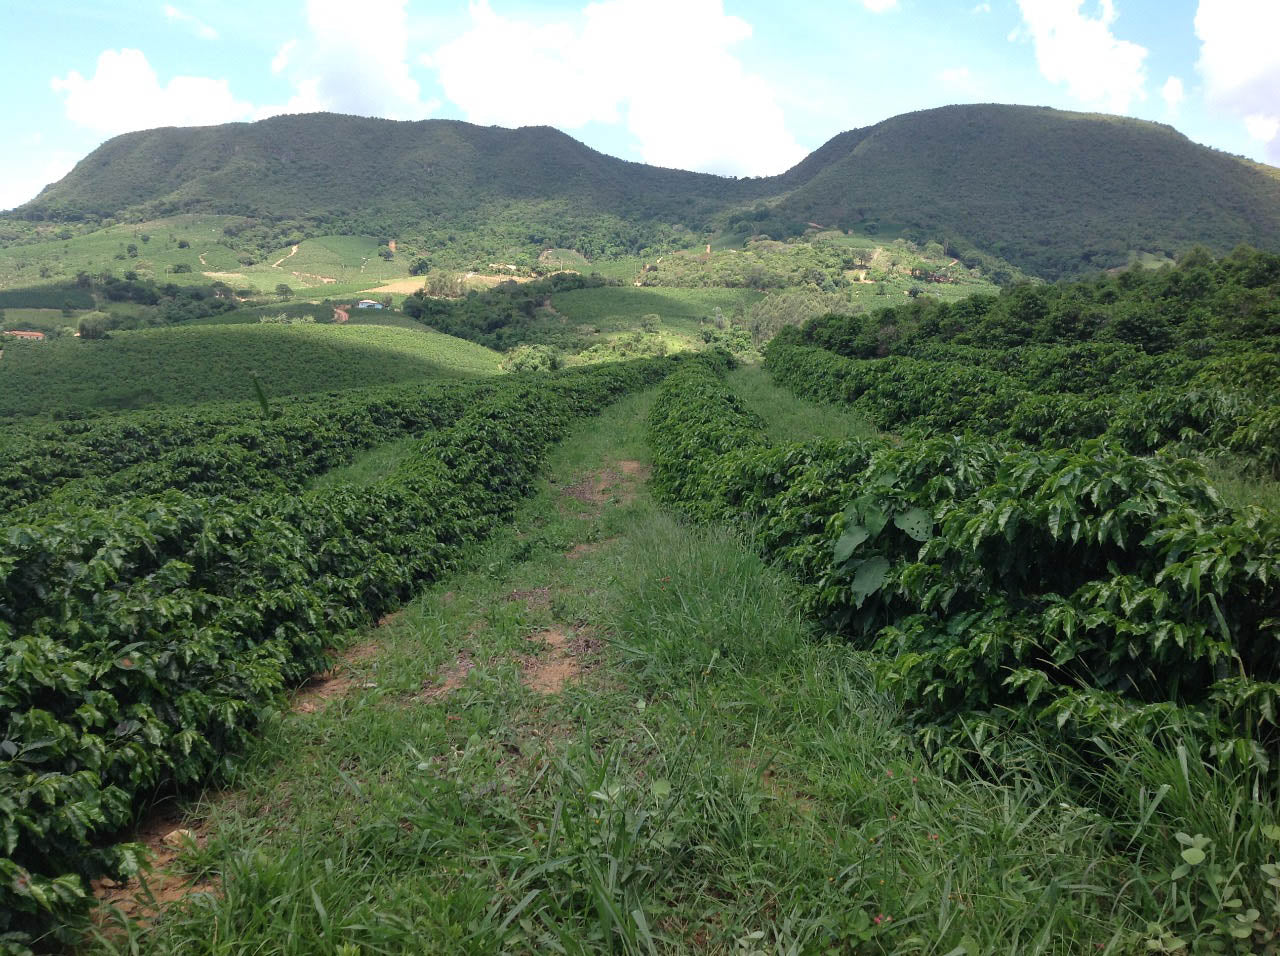 Sitio Urtiga Natural Arara - Transparent coffee supply company